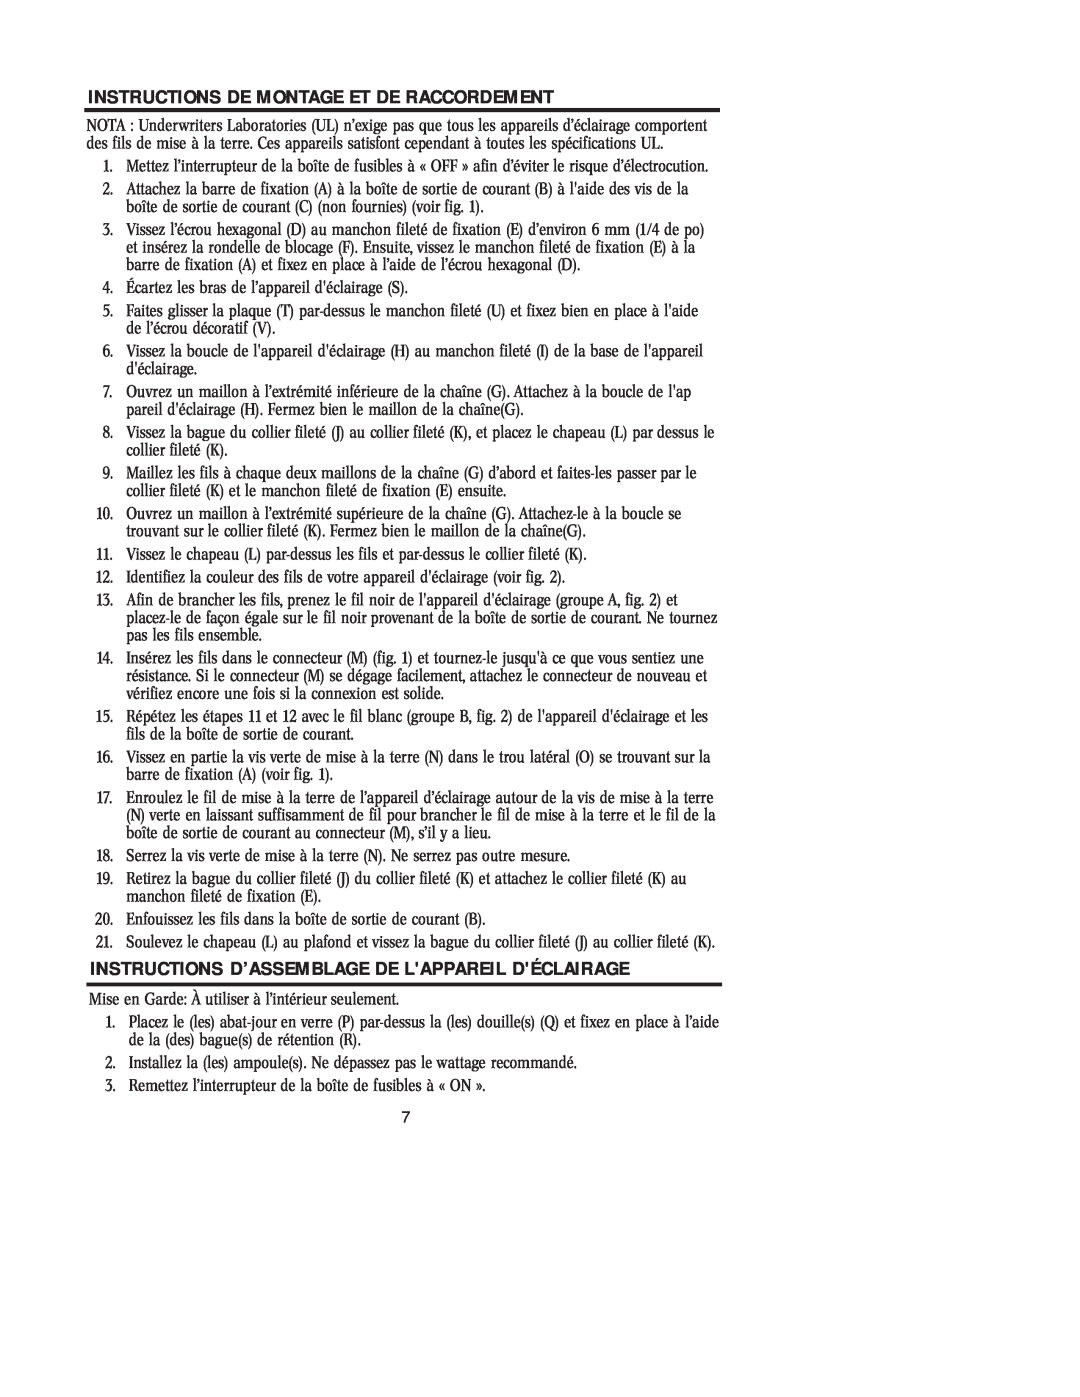 Westinghouse W-224 091305 Instructions De Montage Et De Raccordement, Instructions D’Assemblage De Lappareil Déclairage 